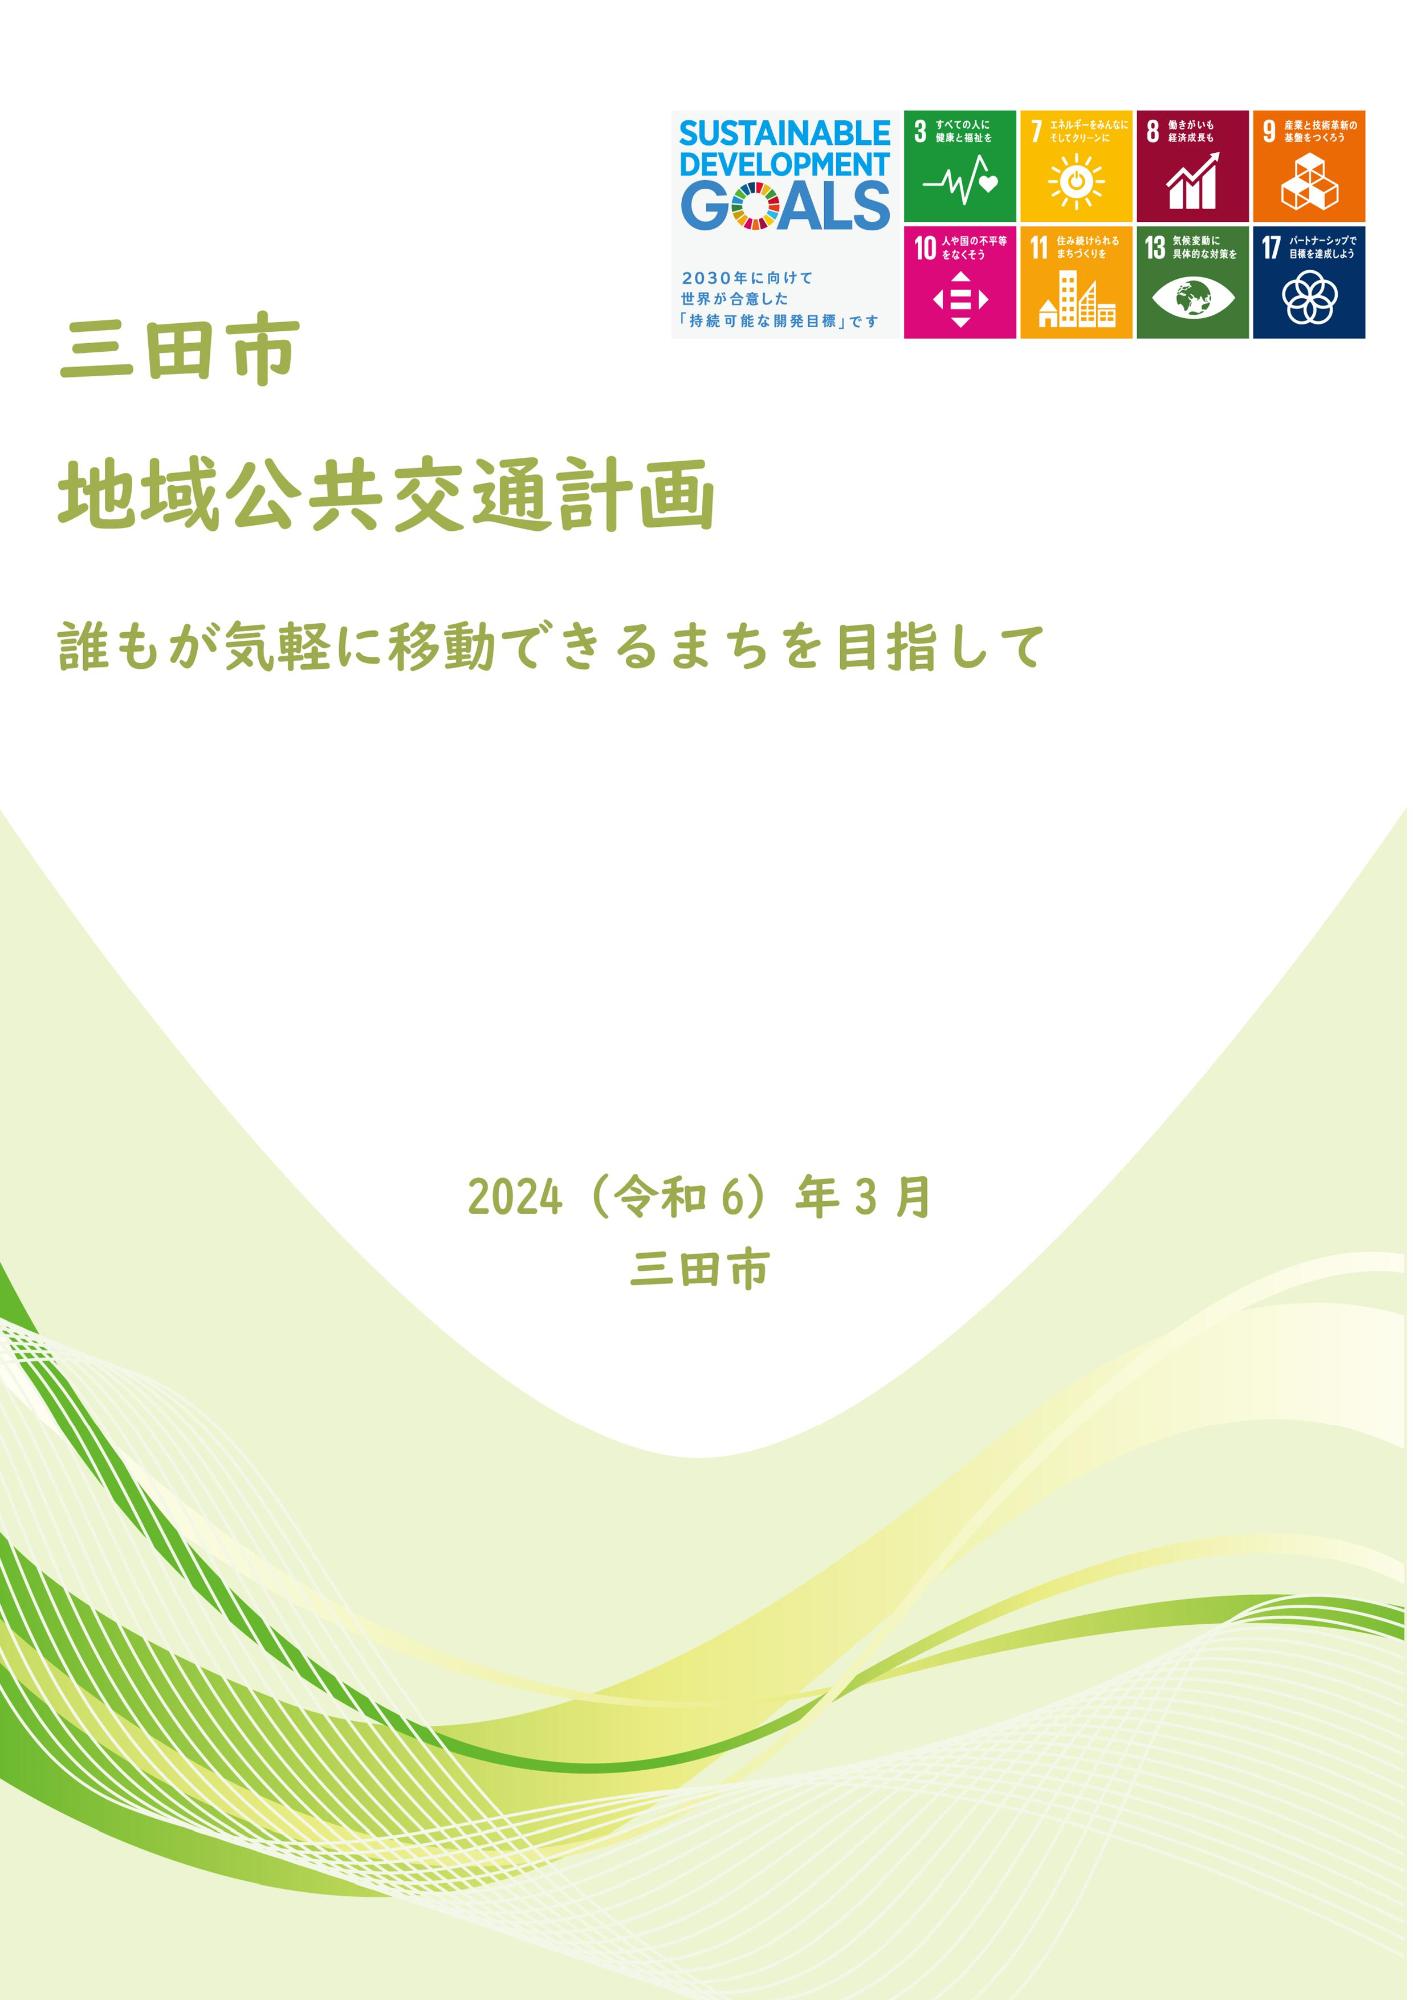 三田市地域公共交通計画の表紙